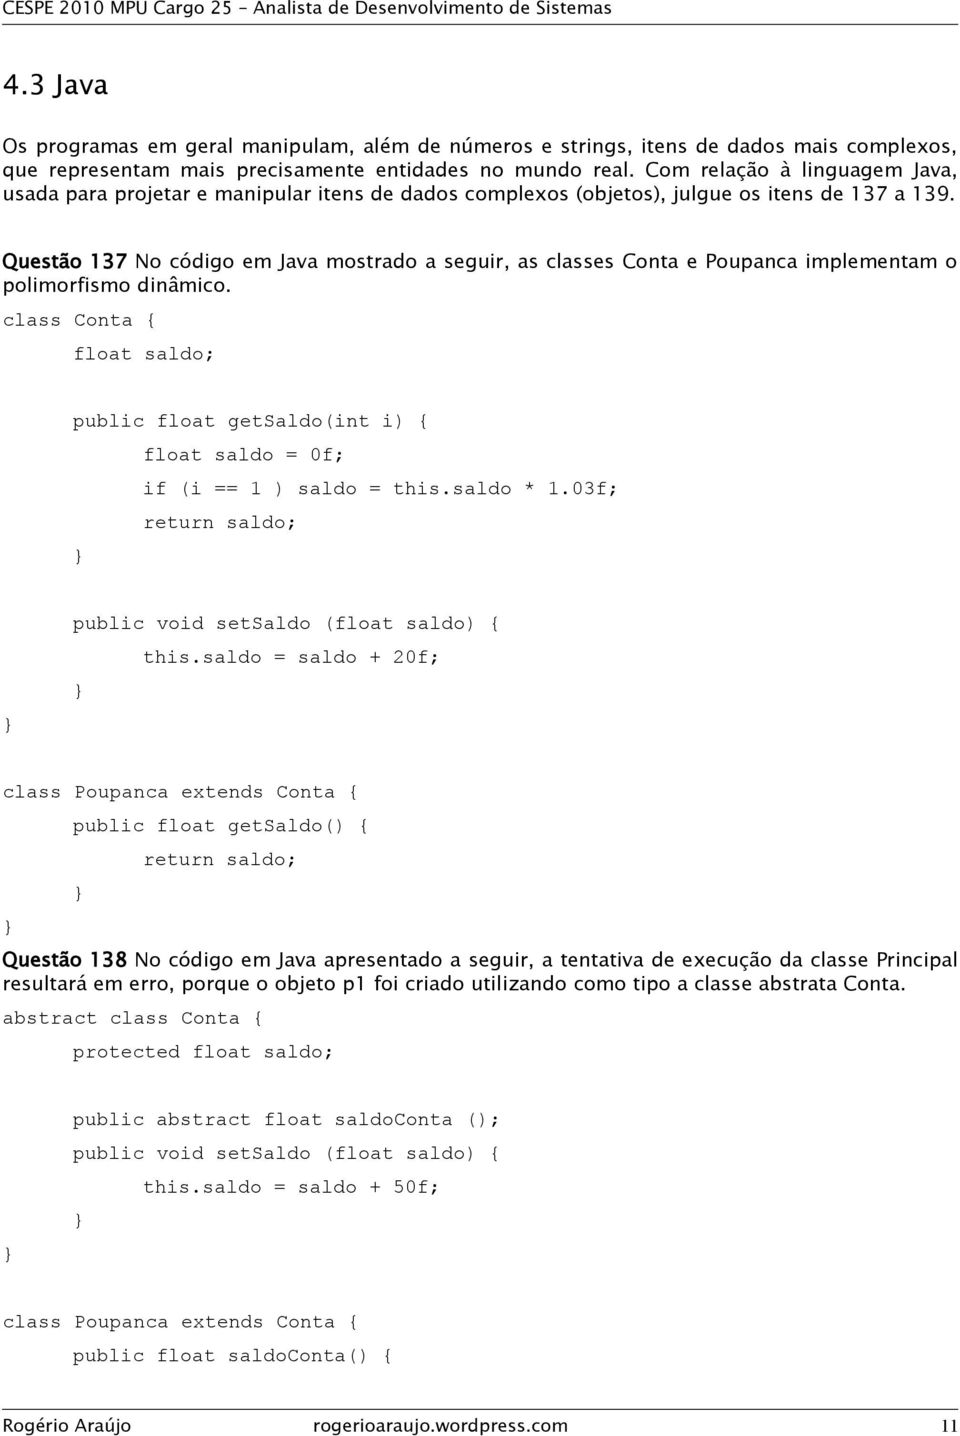 Questão 137 No código em Java mostrado a seguir, as classes Conta e Poupanca implementam o polimorfismo dinâmico.